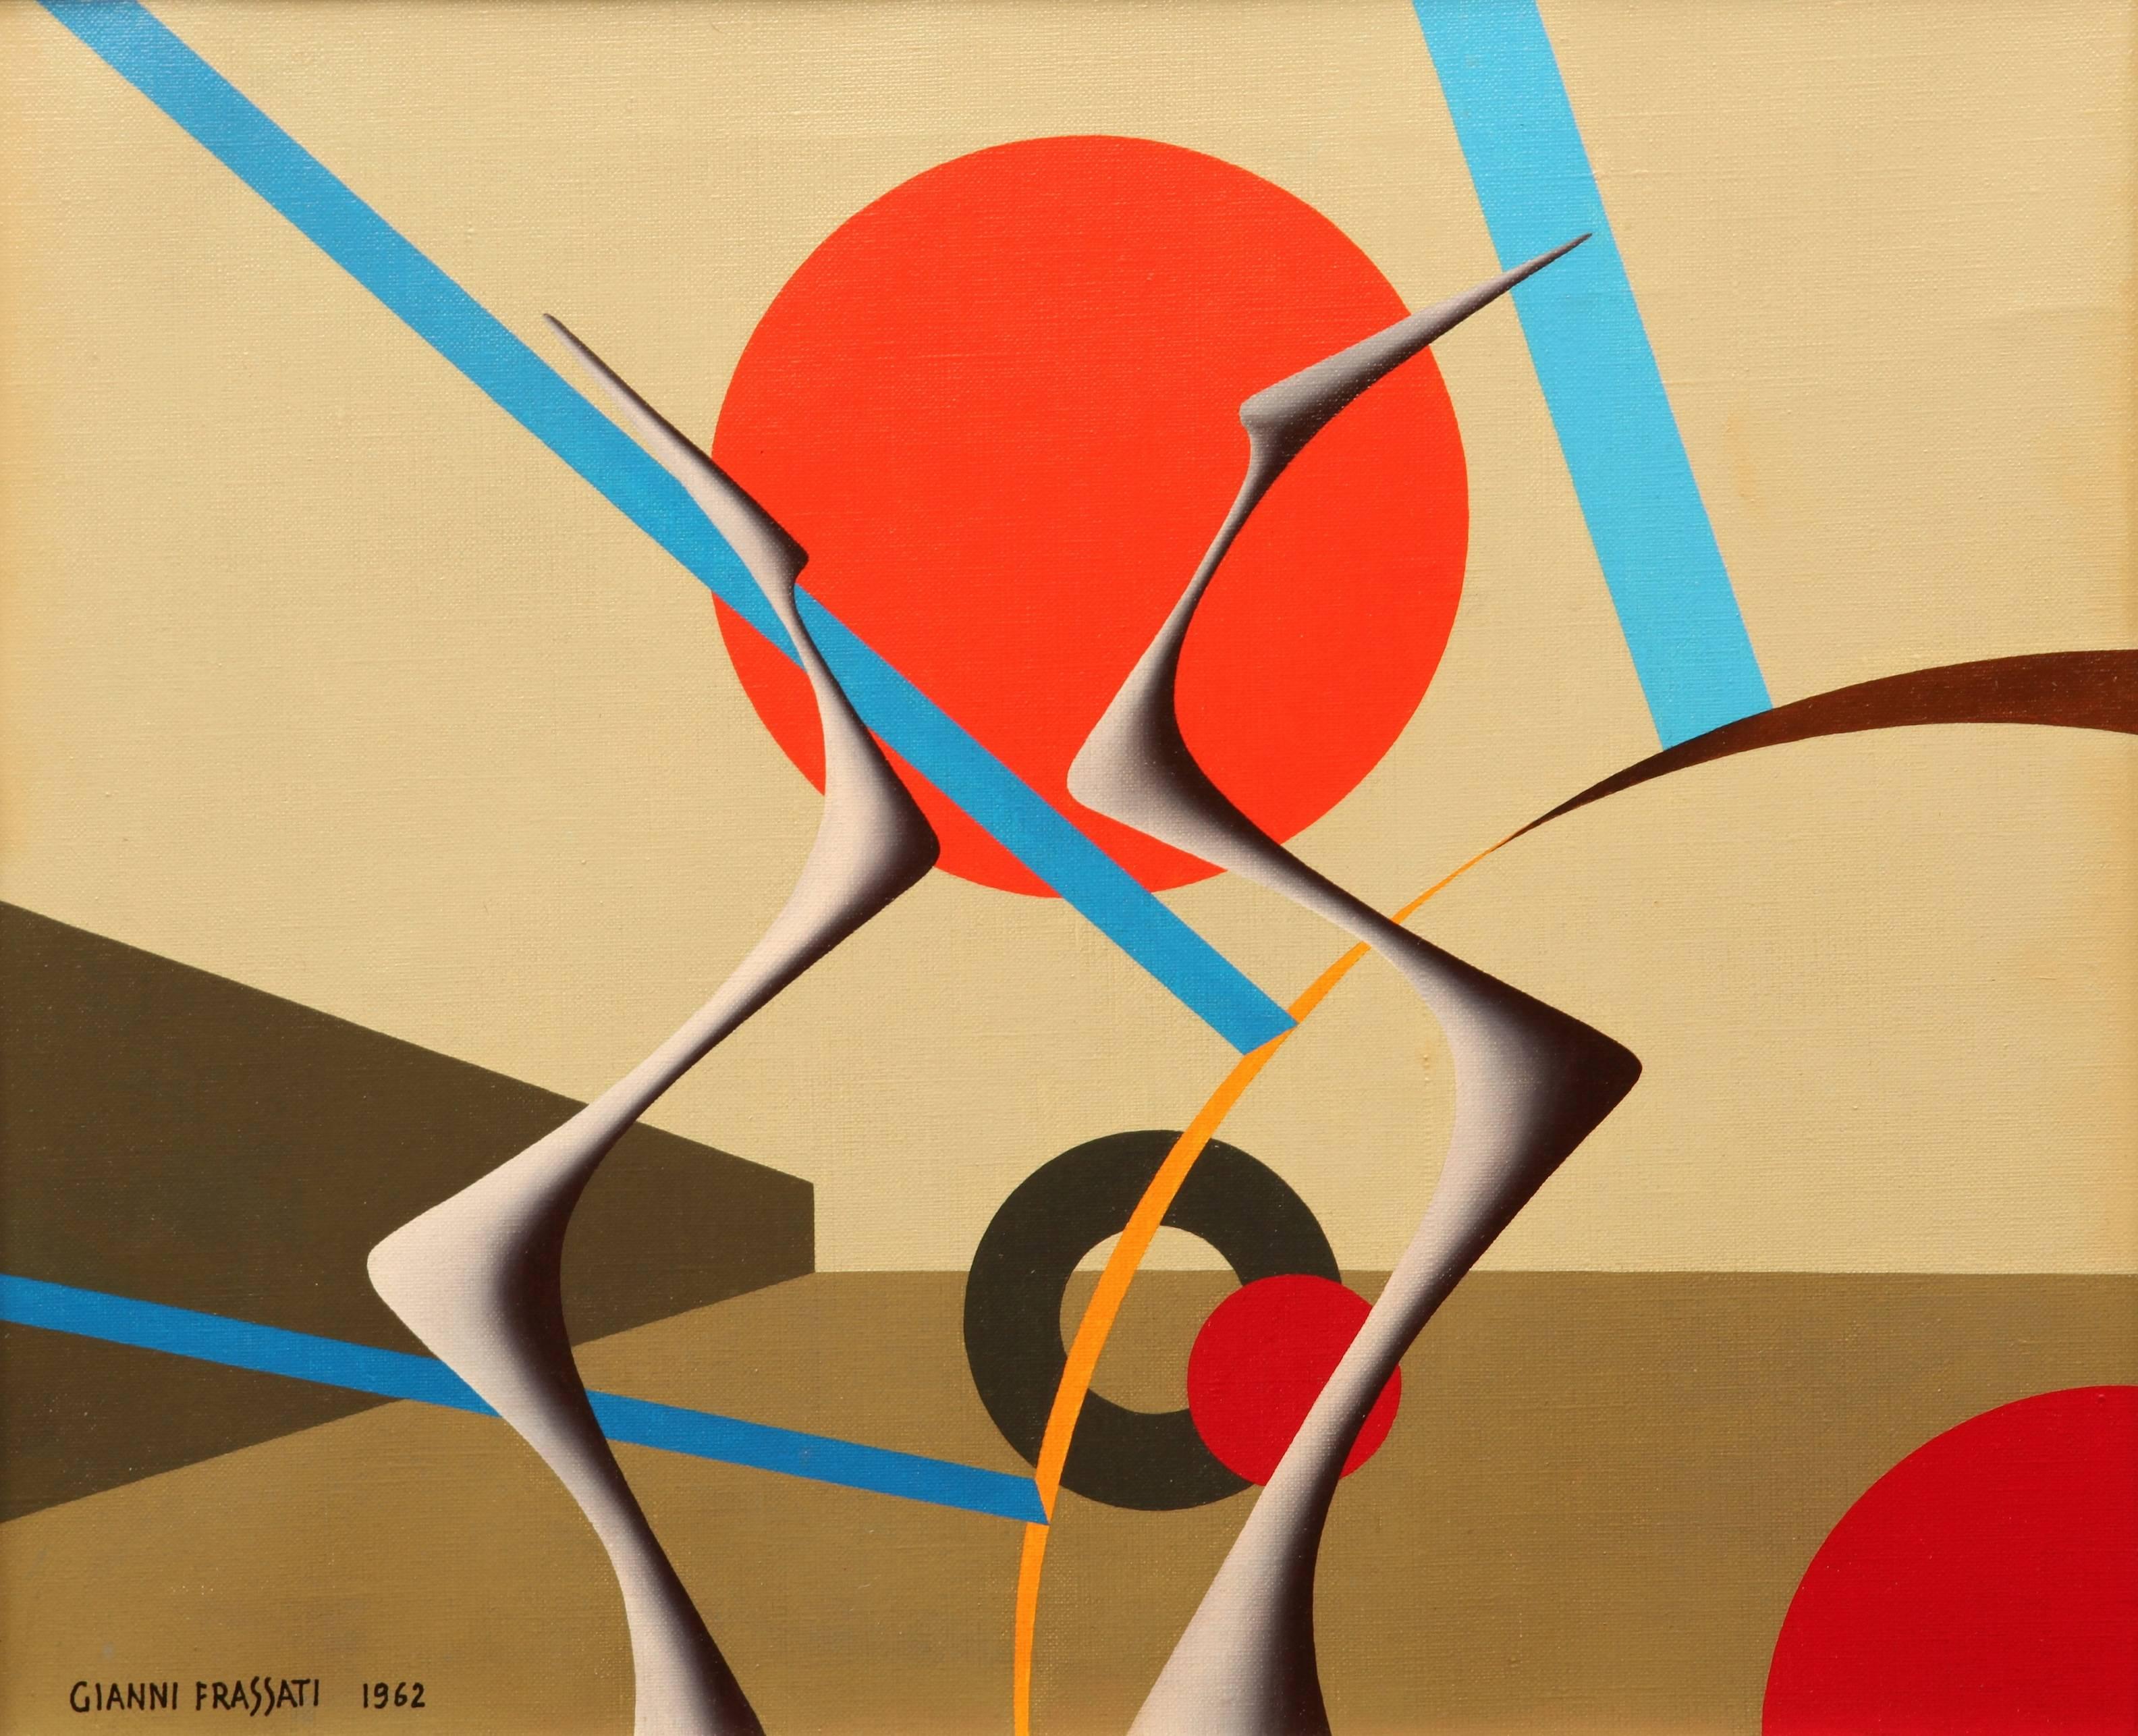 Superbe peinture abstraite géométrique de l'artiste italien Gianni Frassati (1924). La plupart de ses œuvres représentent ces paysages surréalistes complexes avec des espaces planaires géométriques en trois dimensions dans des couleurs primaires.